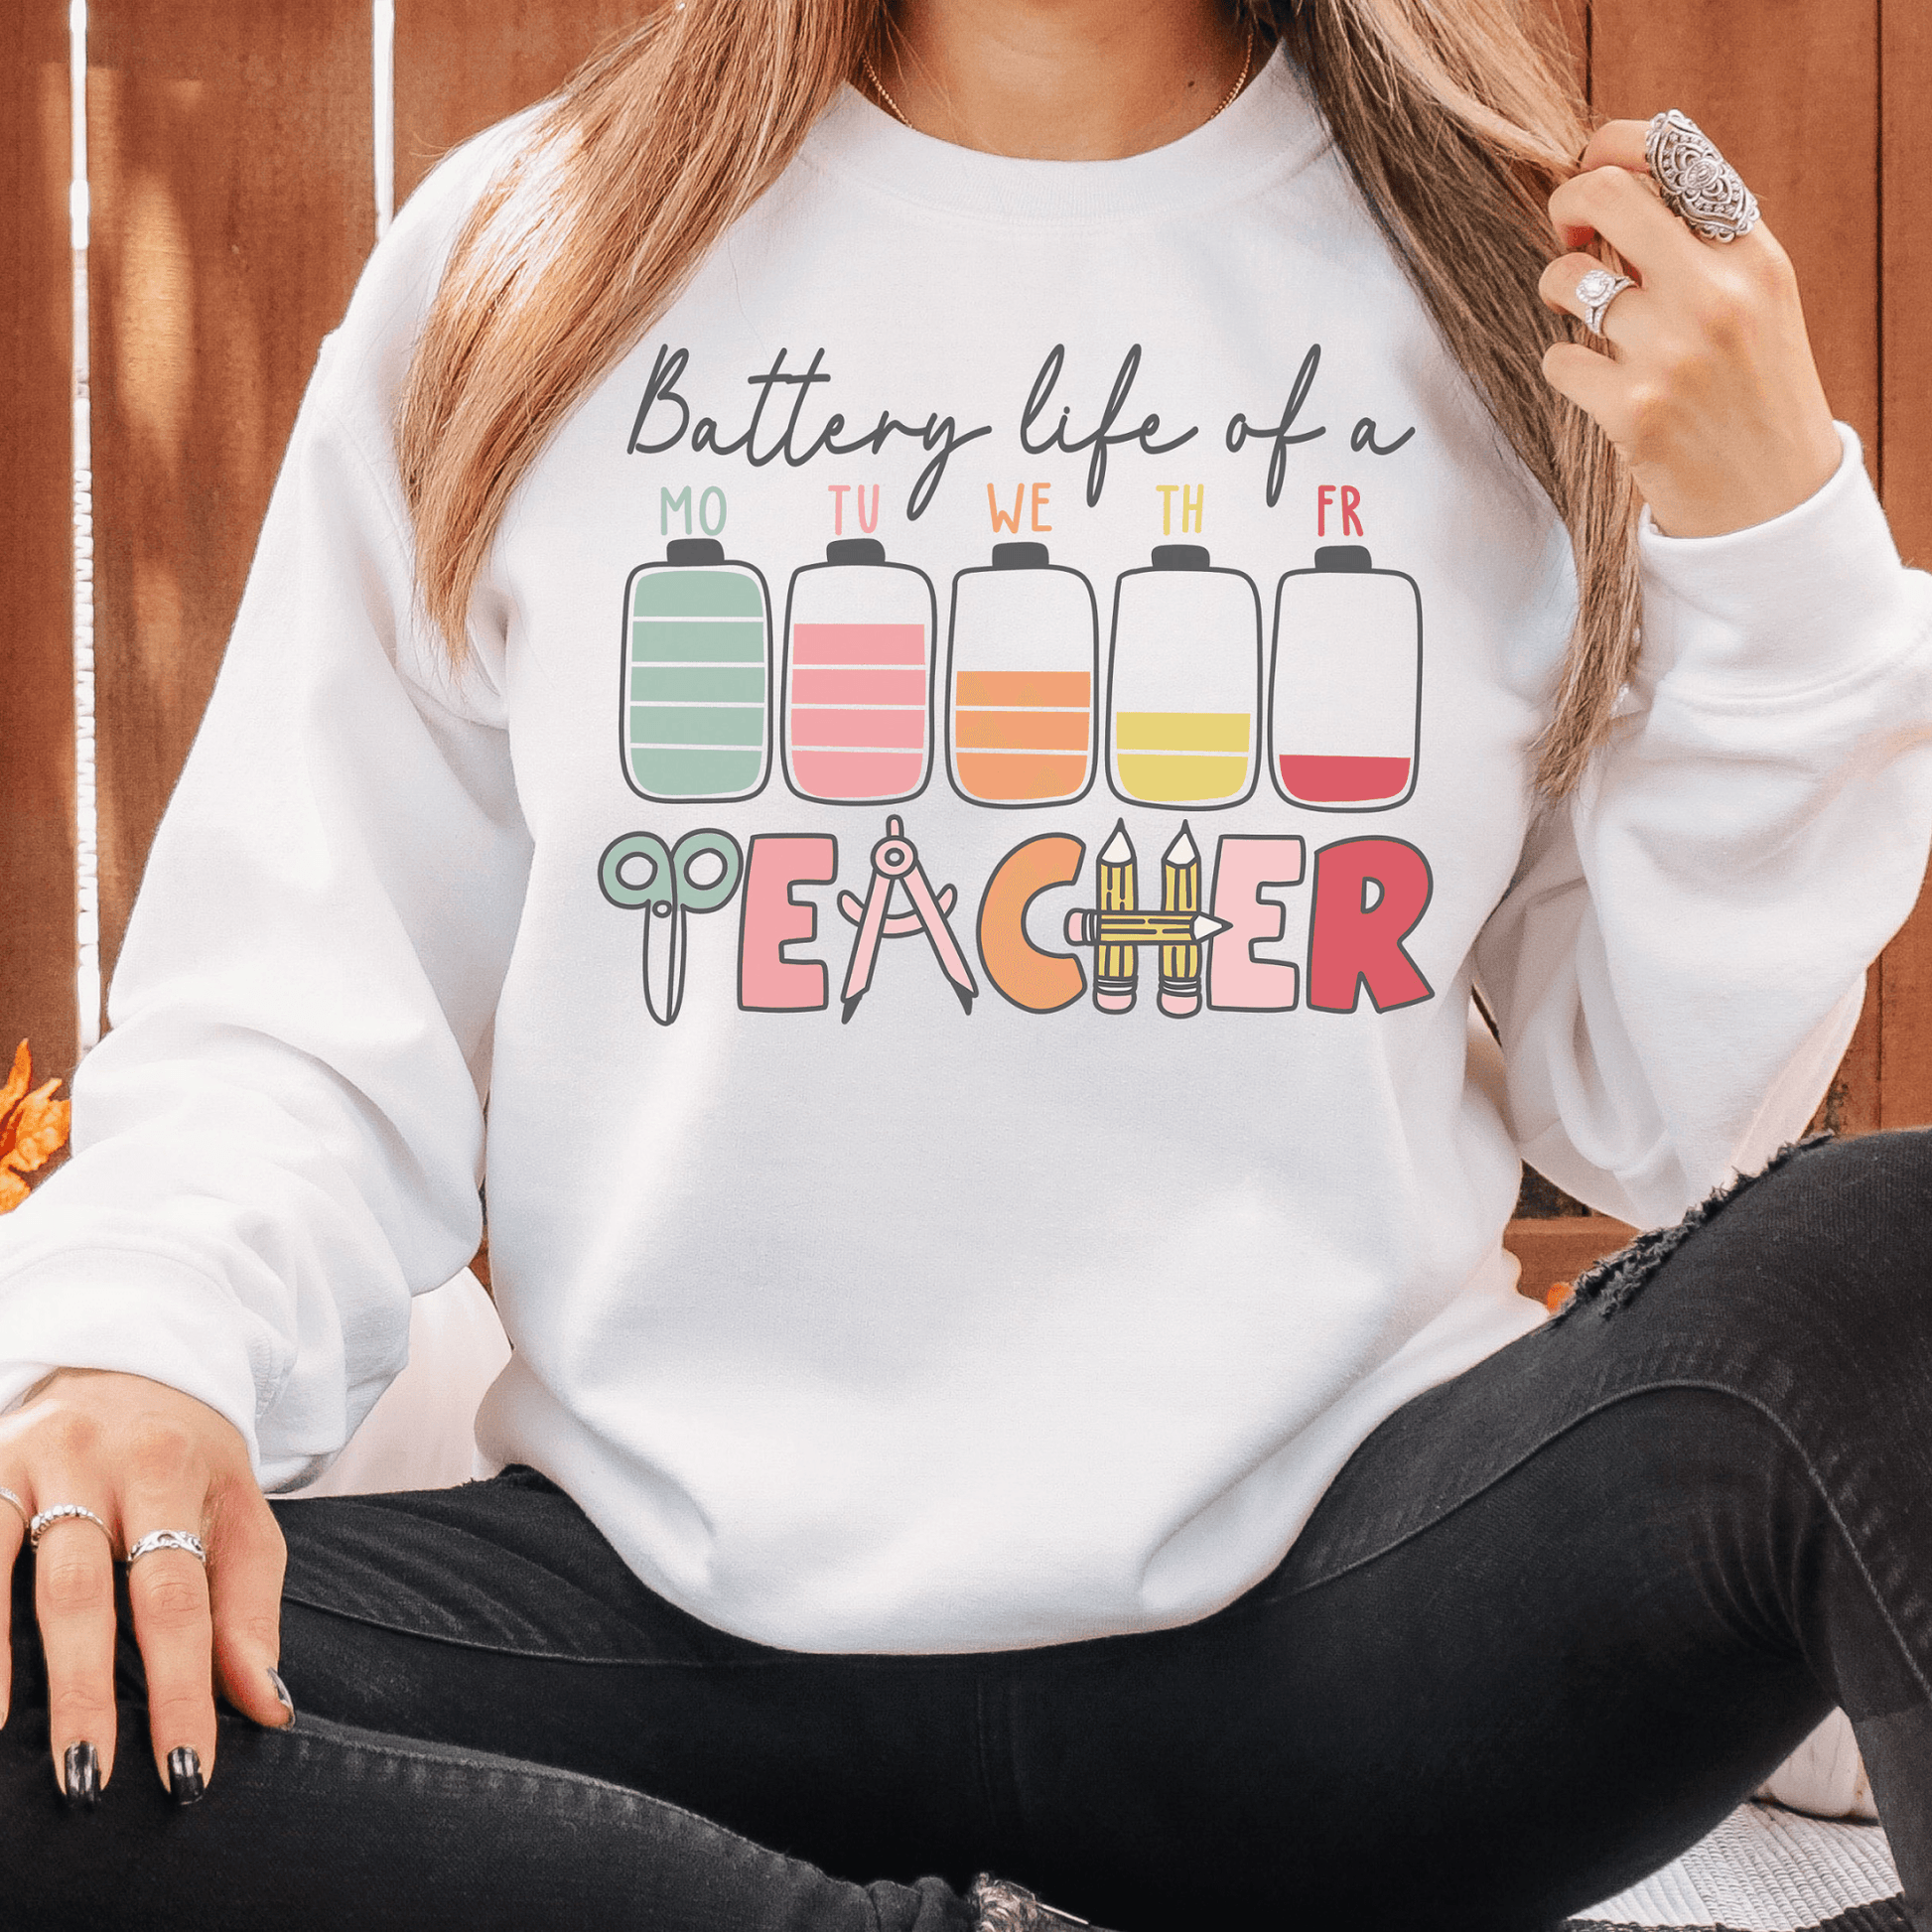 Lehrer Akkustand – Sweatshirt für den Alltag - GiftHaus